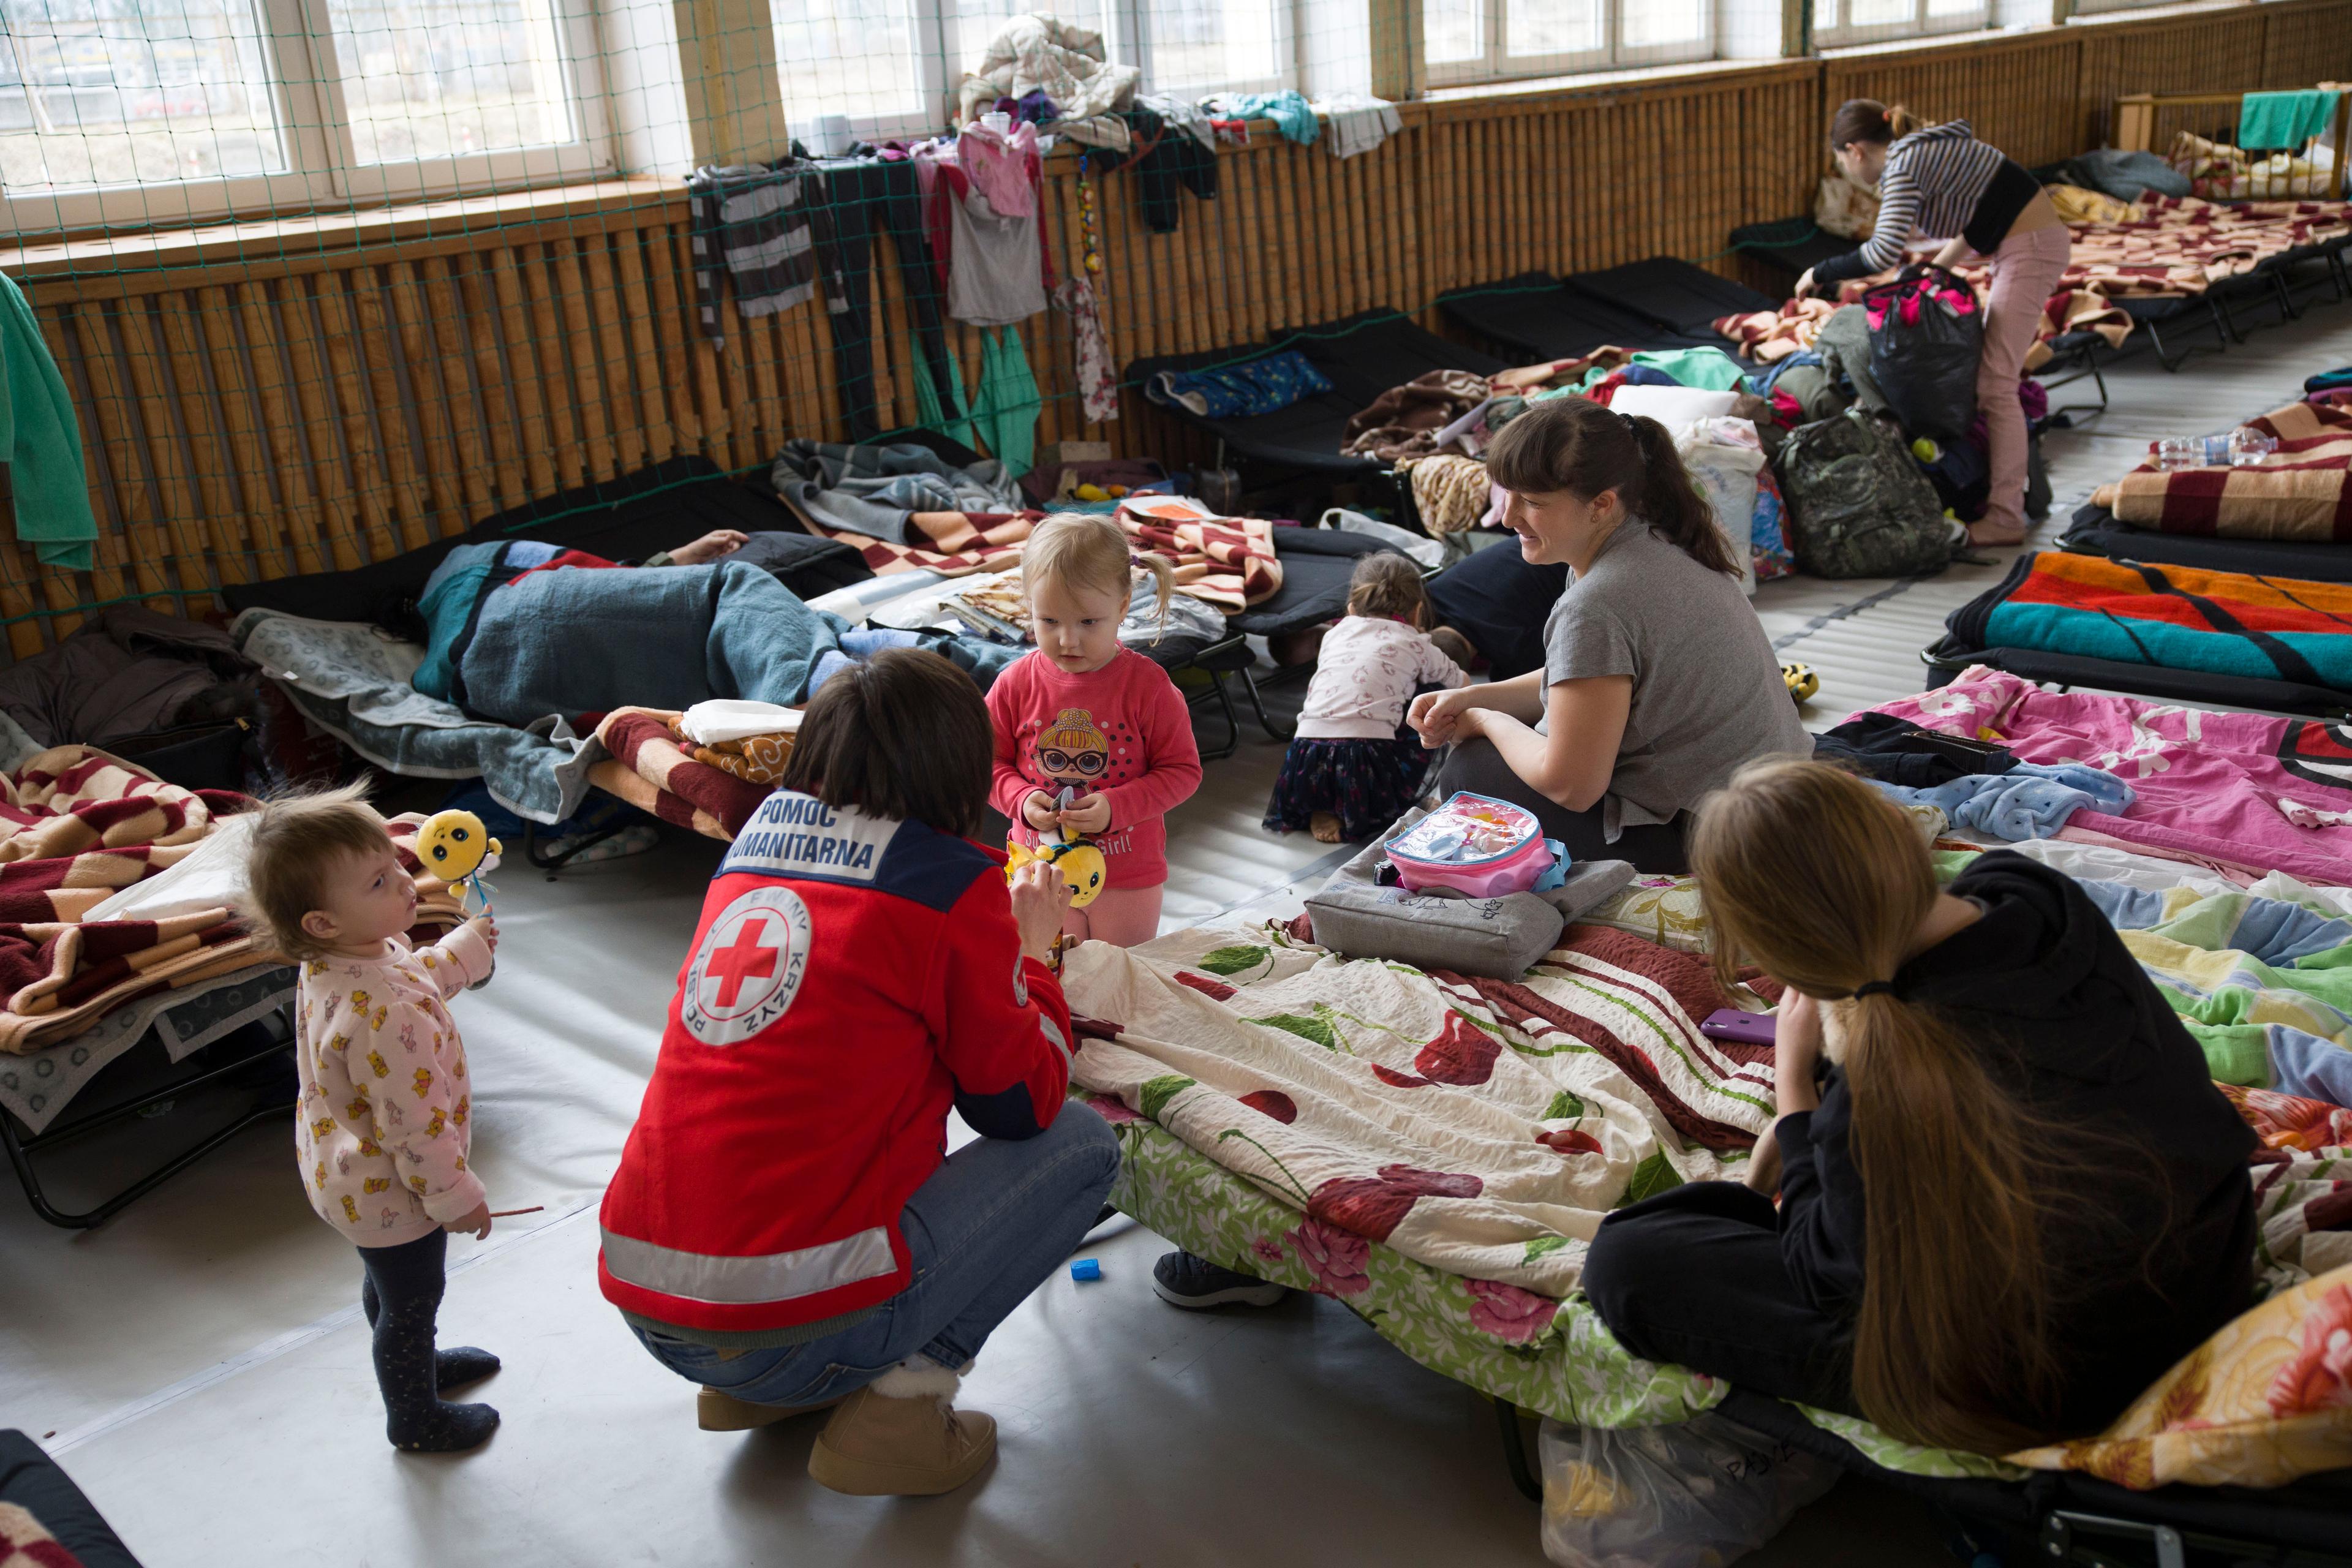 Eine Frau mit Rotkreuz-Jacke kauert neben zwei jungen Frauen und ihren kleinen Kindern. Sie befinden sich in einer Notunterkunft mit Dutzenden von aneinandergereihten Betten und Matratzen.